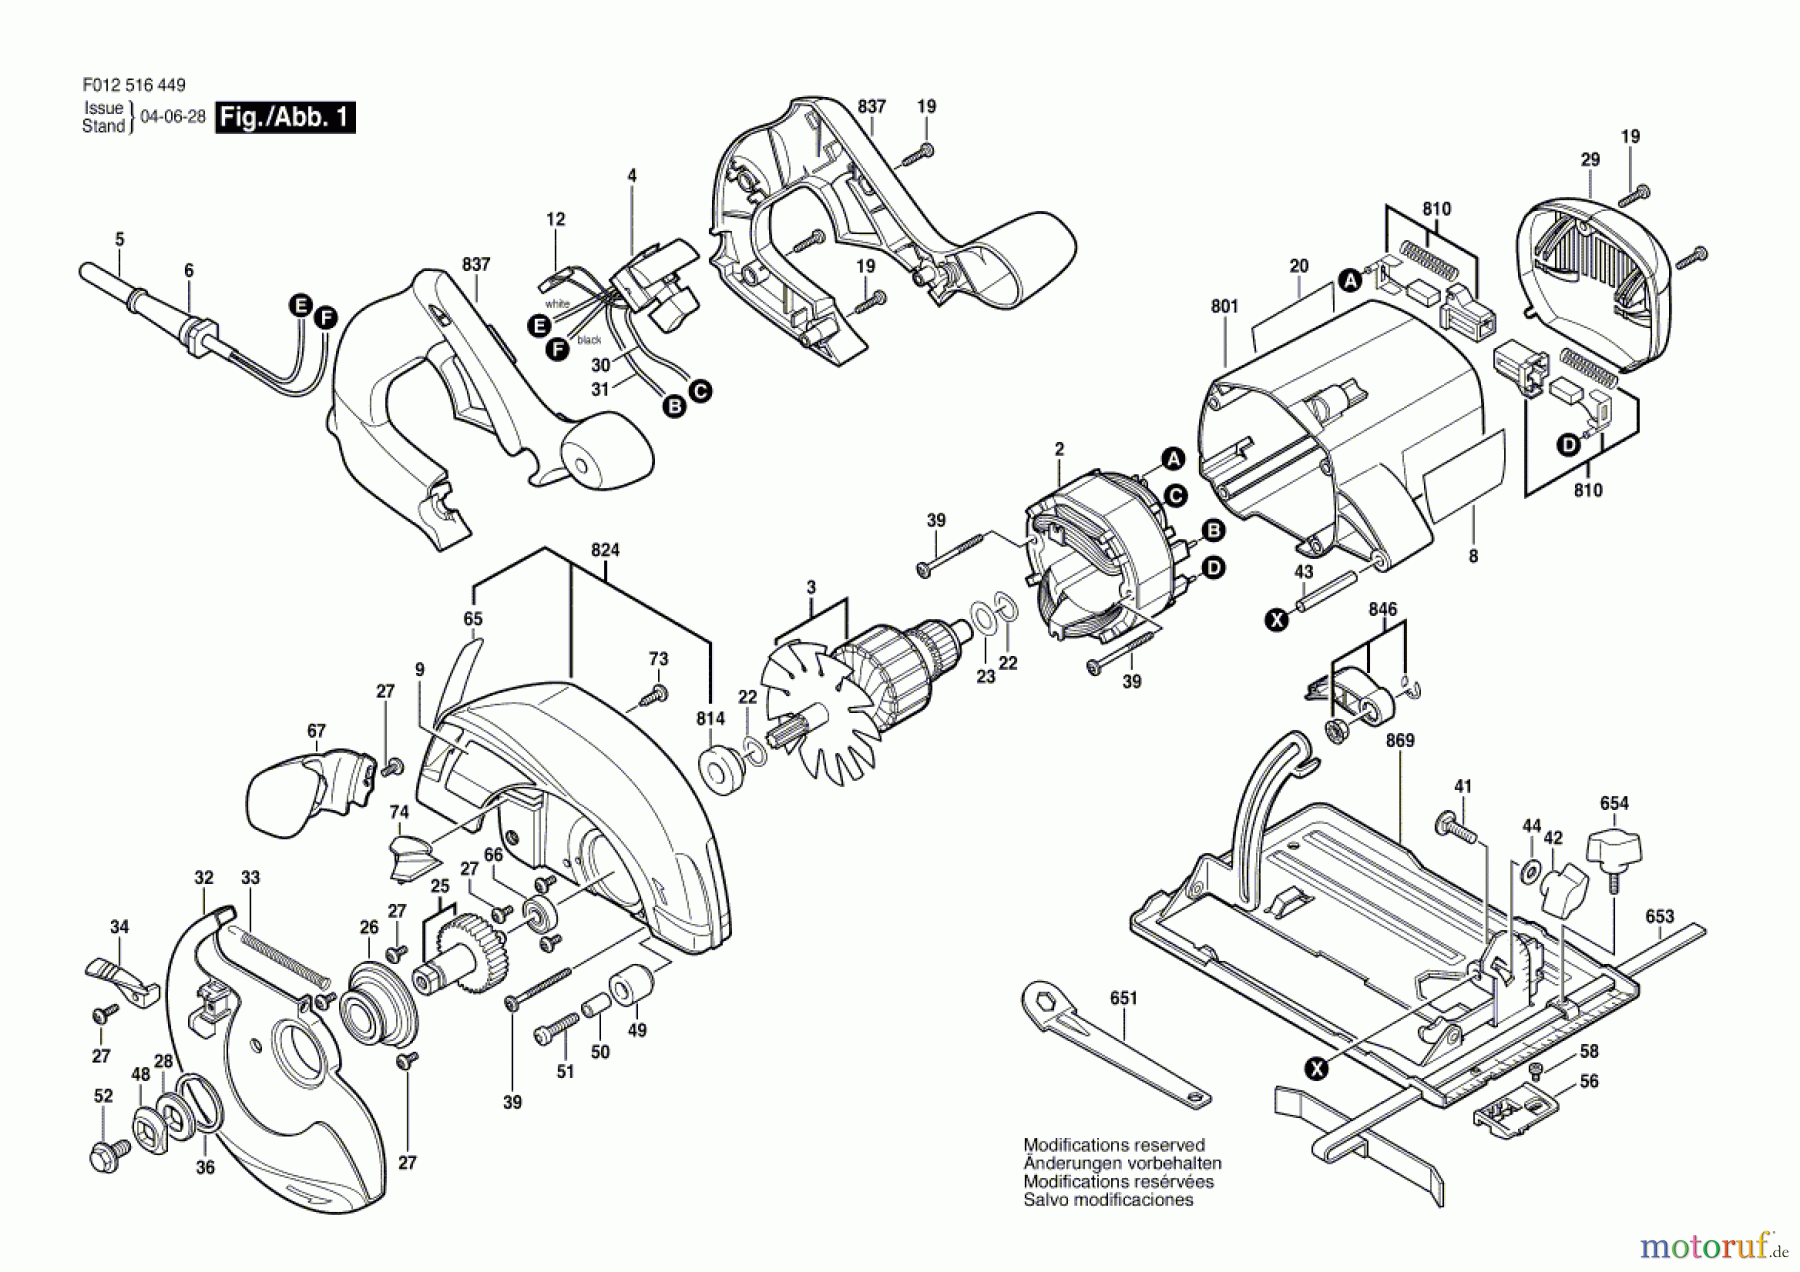  Bosch Werkzeug Handkreissäge 5164 Seite 1